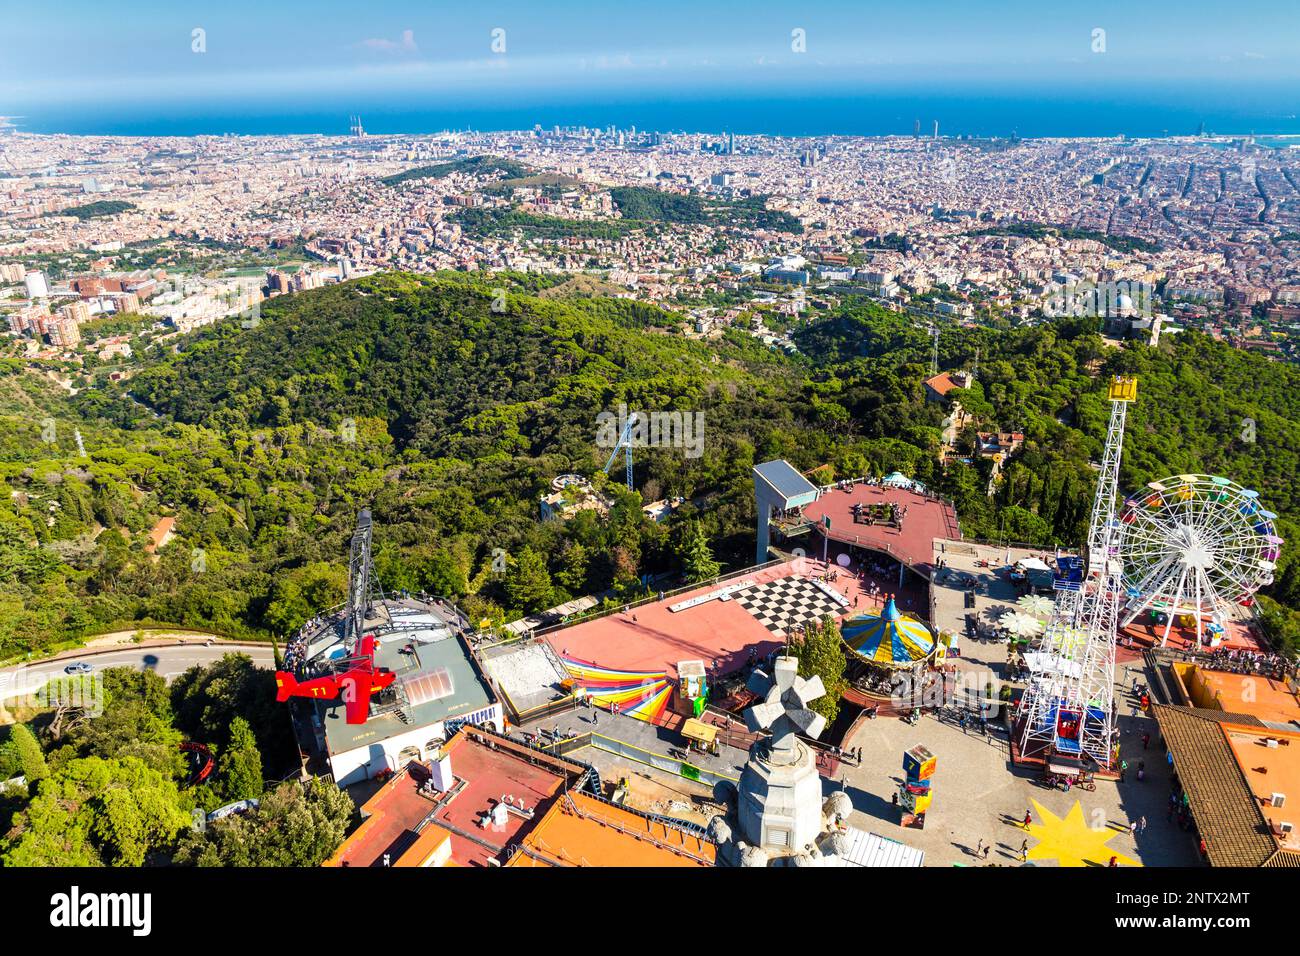 Vue panoramique sur Barcelone et le parc d'attractions Tibidabo, Barcelone, Espagne Banque D'Images